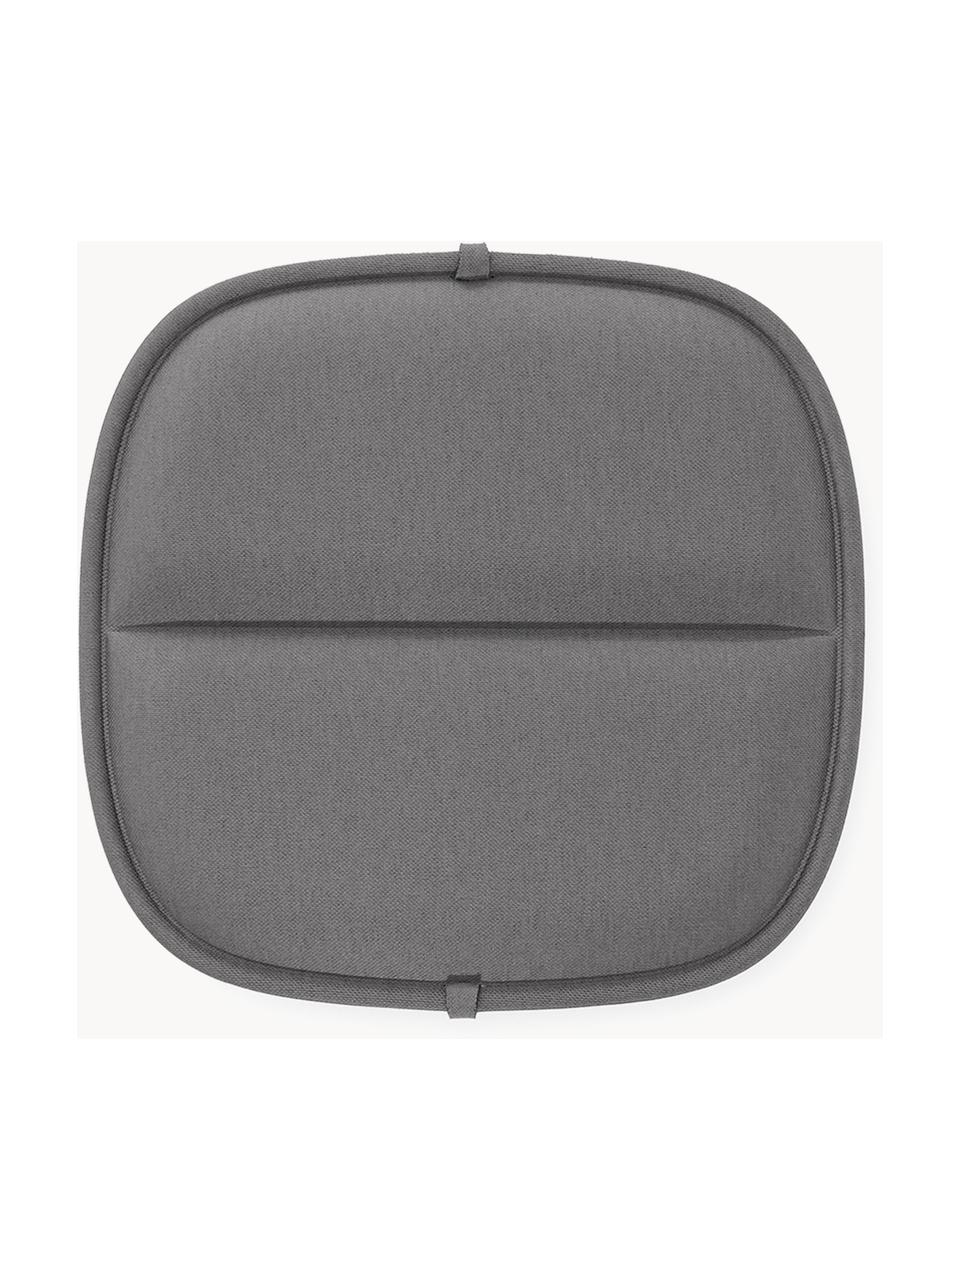 Cojín de asiento para exterior Hiray, Tapizado: 50% poliacrílico, 45% pol, Gris oscuro, An 36 x L 35 cm